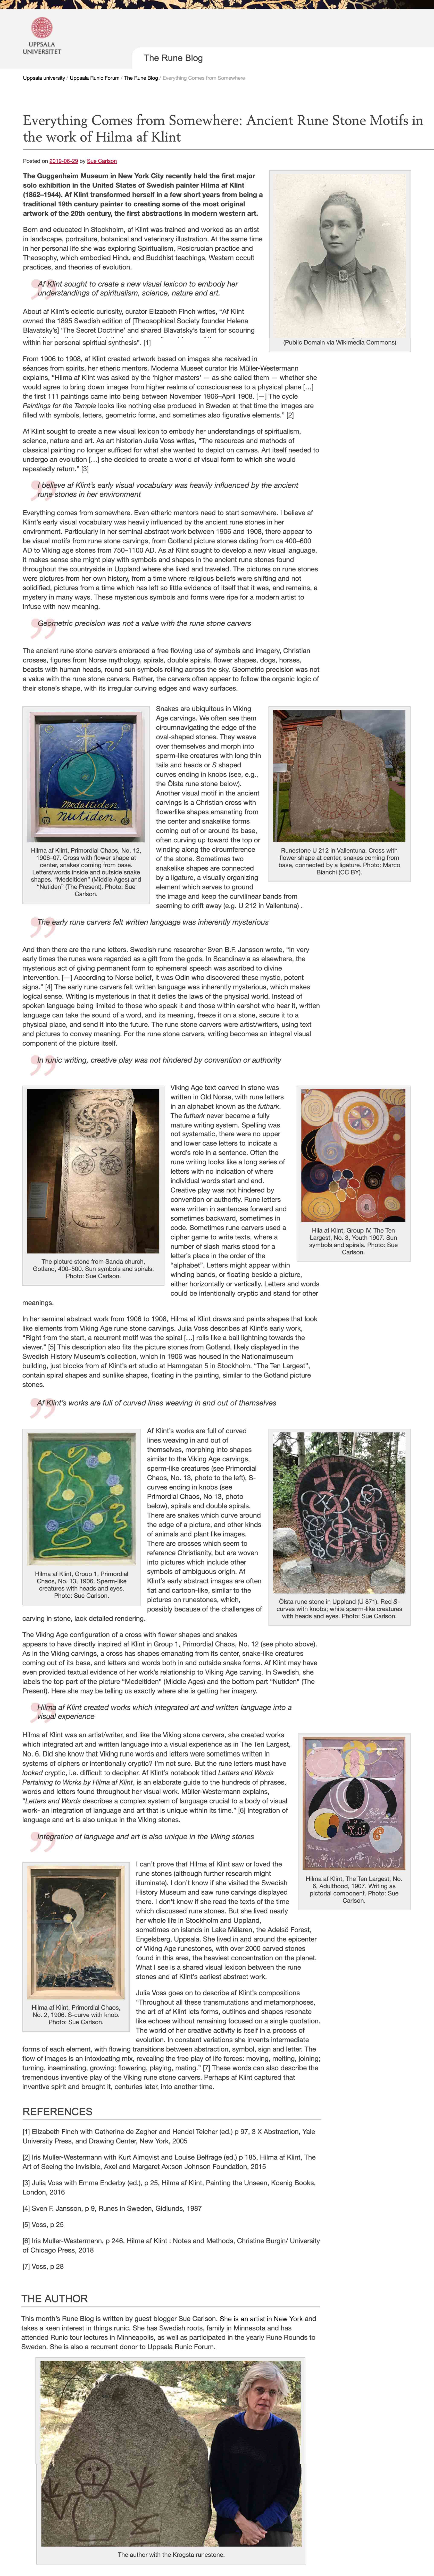 Uppsala Article about Runes and Hilma Af Klimt